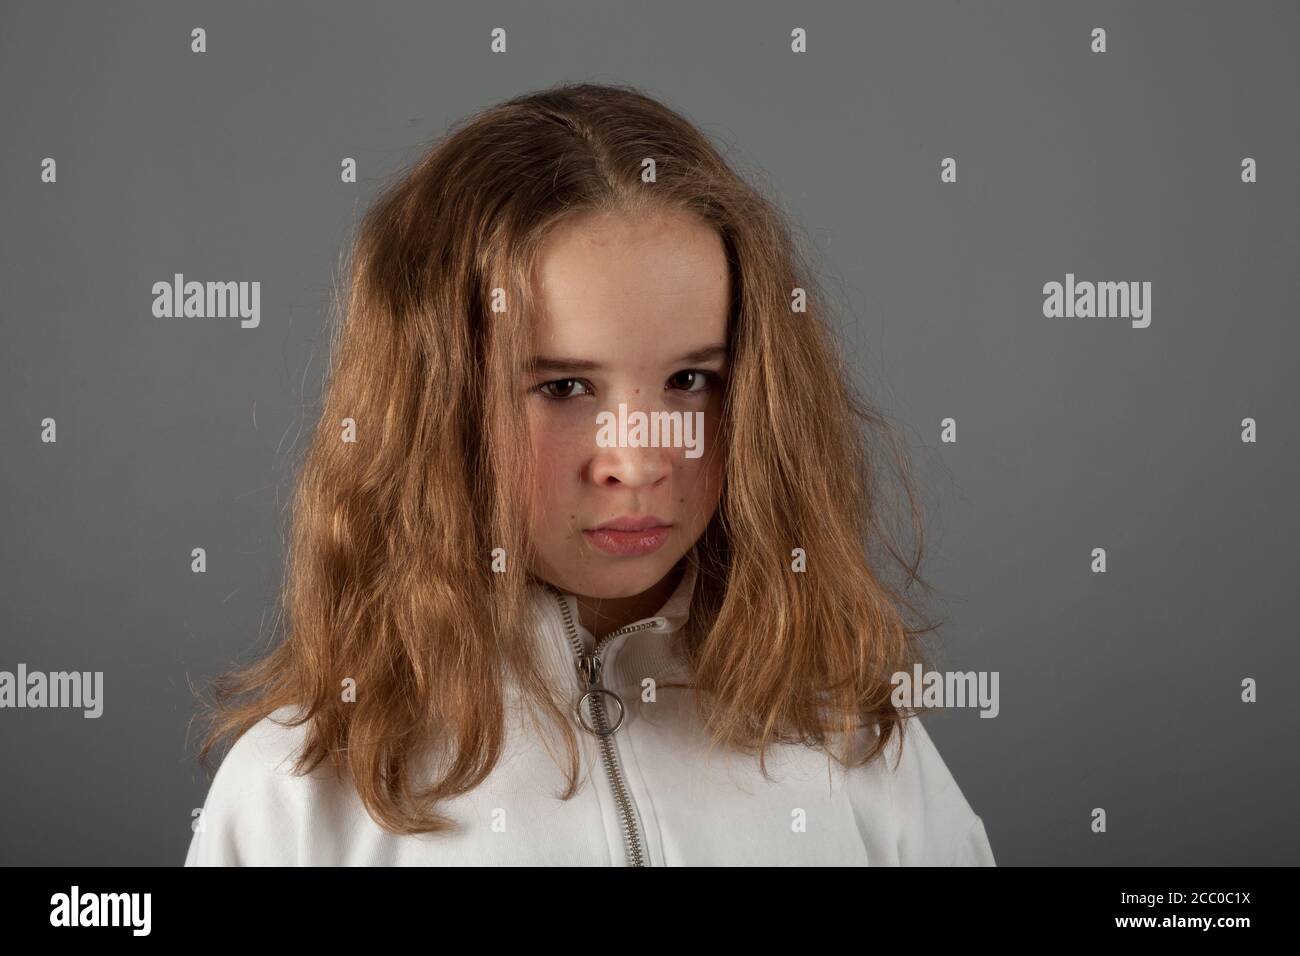 Linda adolescente rubia chica con capucha blanca con cara triste expresión Foto de stock